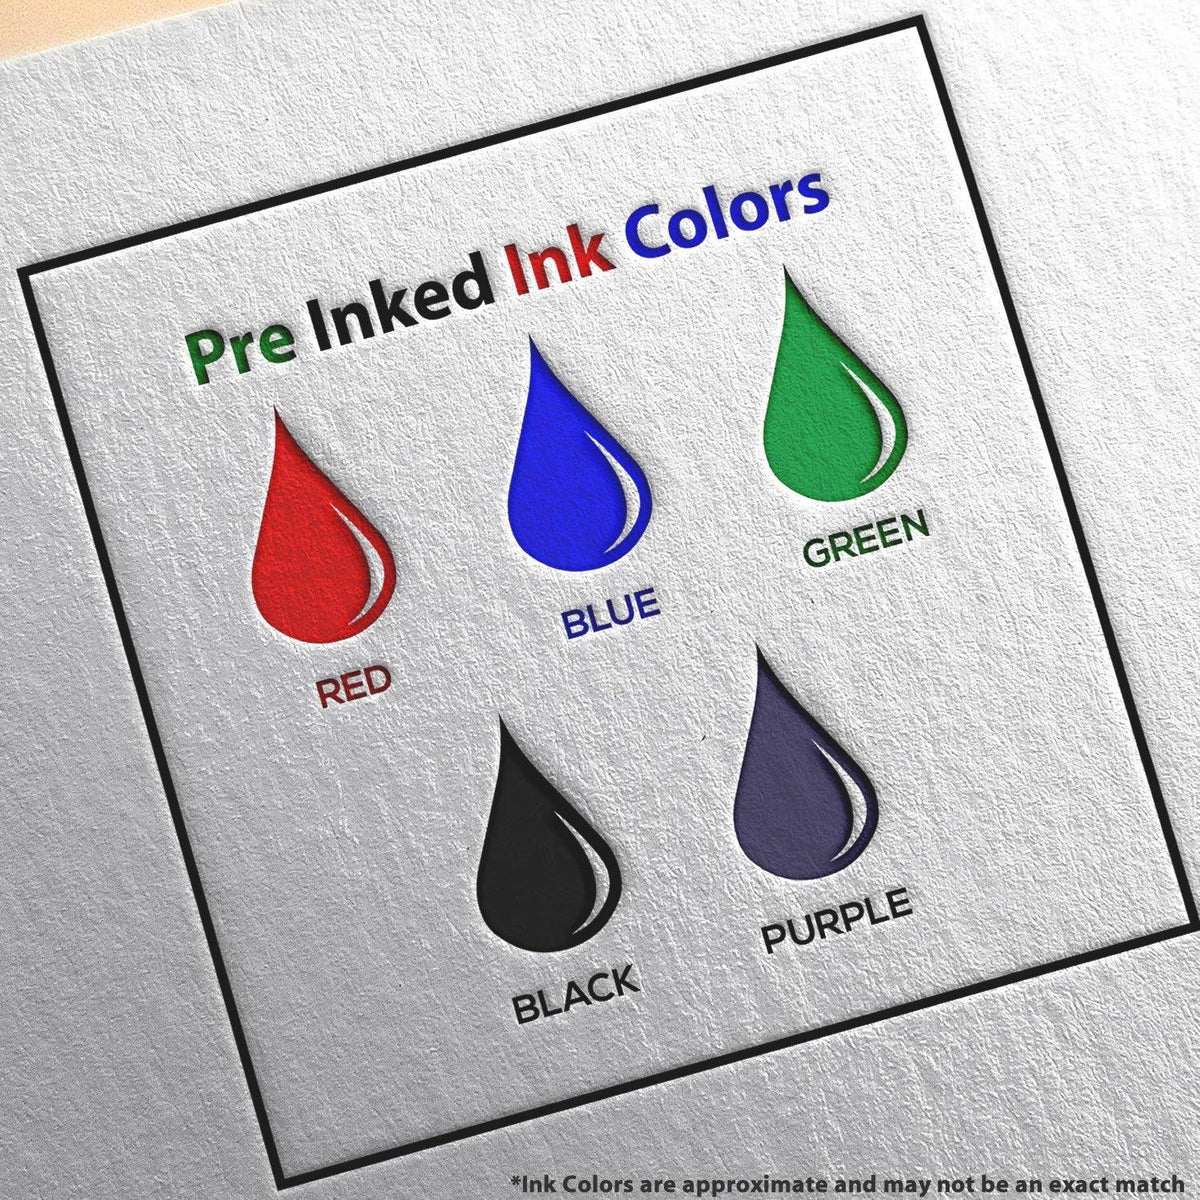 Slim Pre-Inked Return for Better Address Stamp Ink Color Options